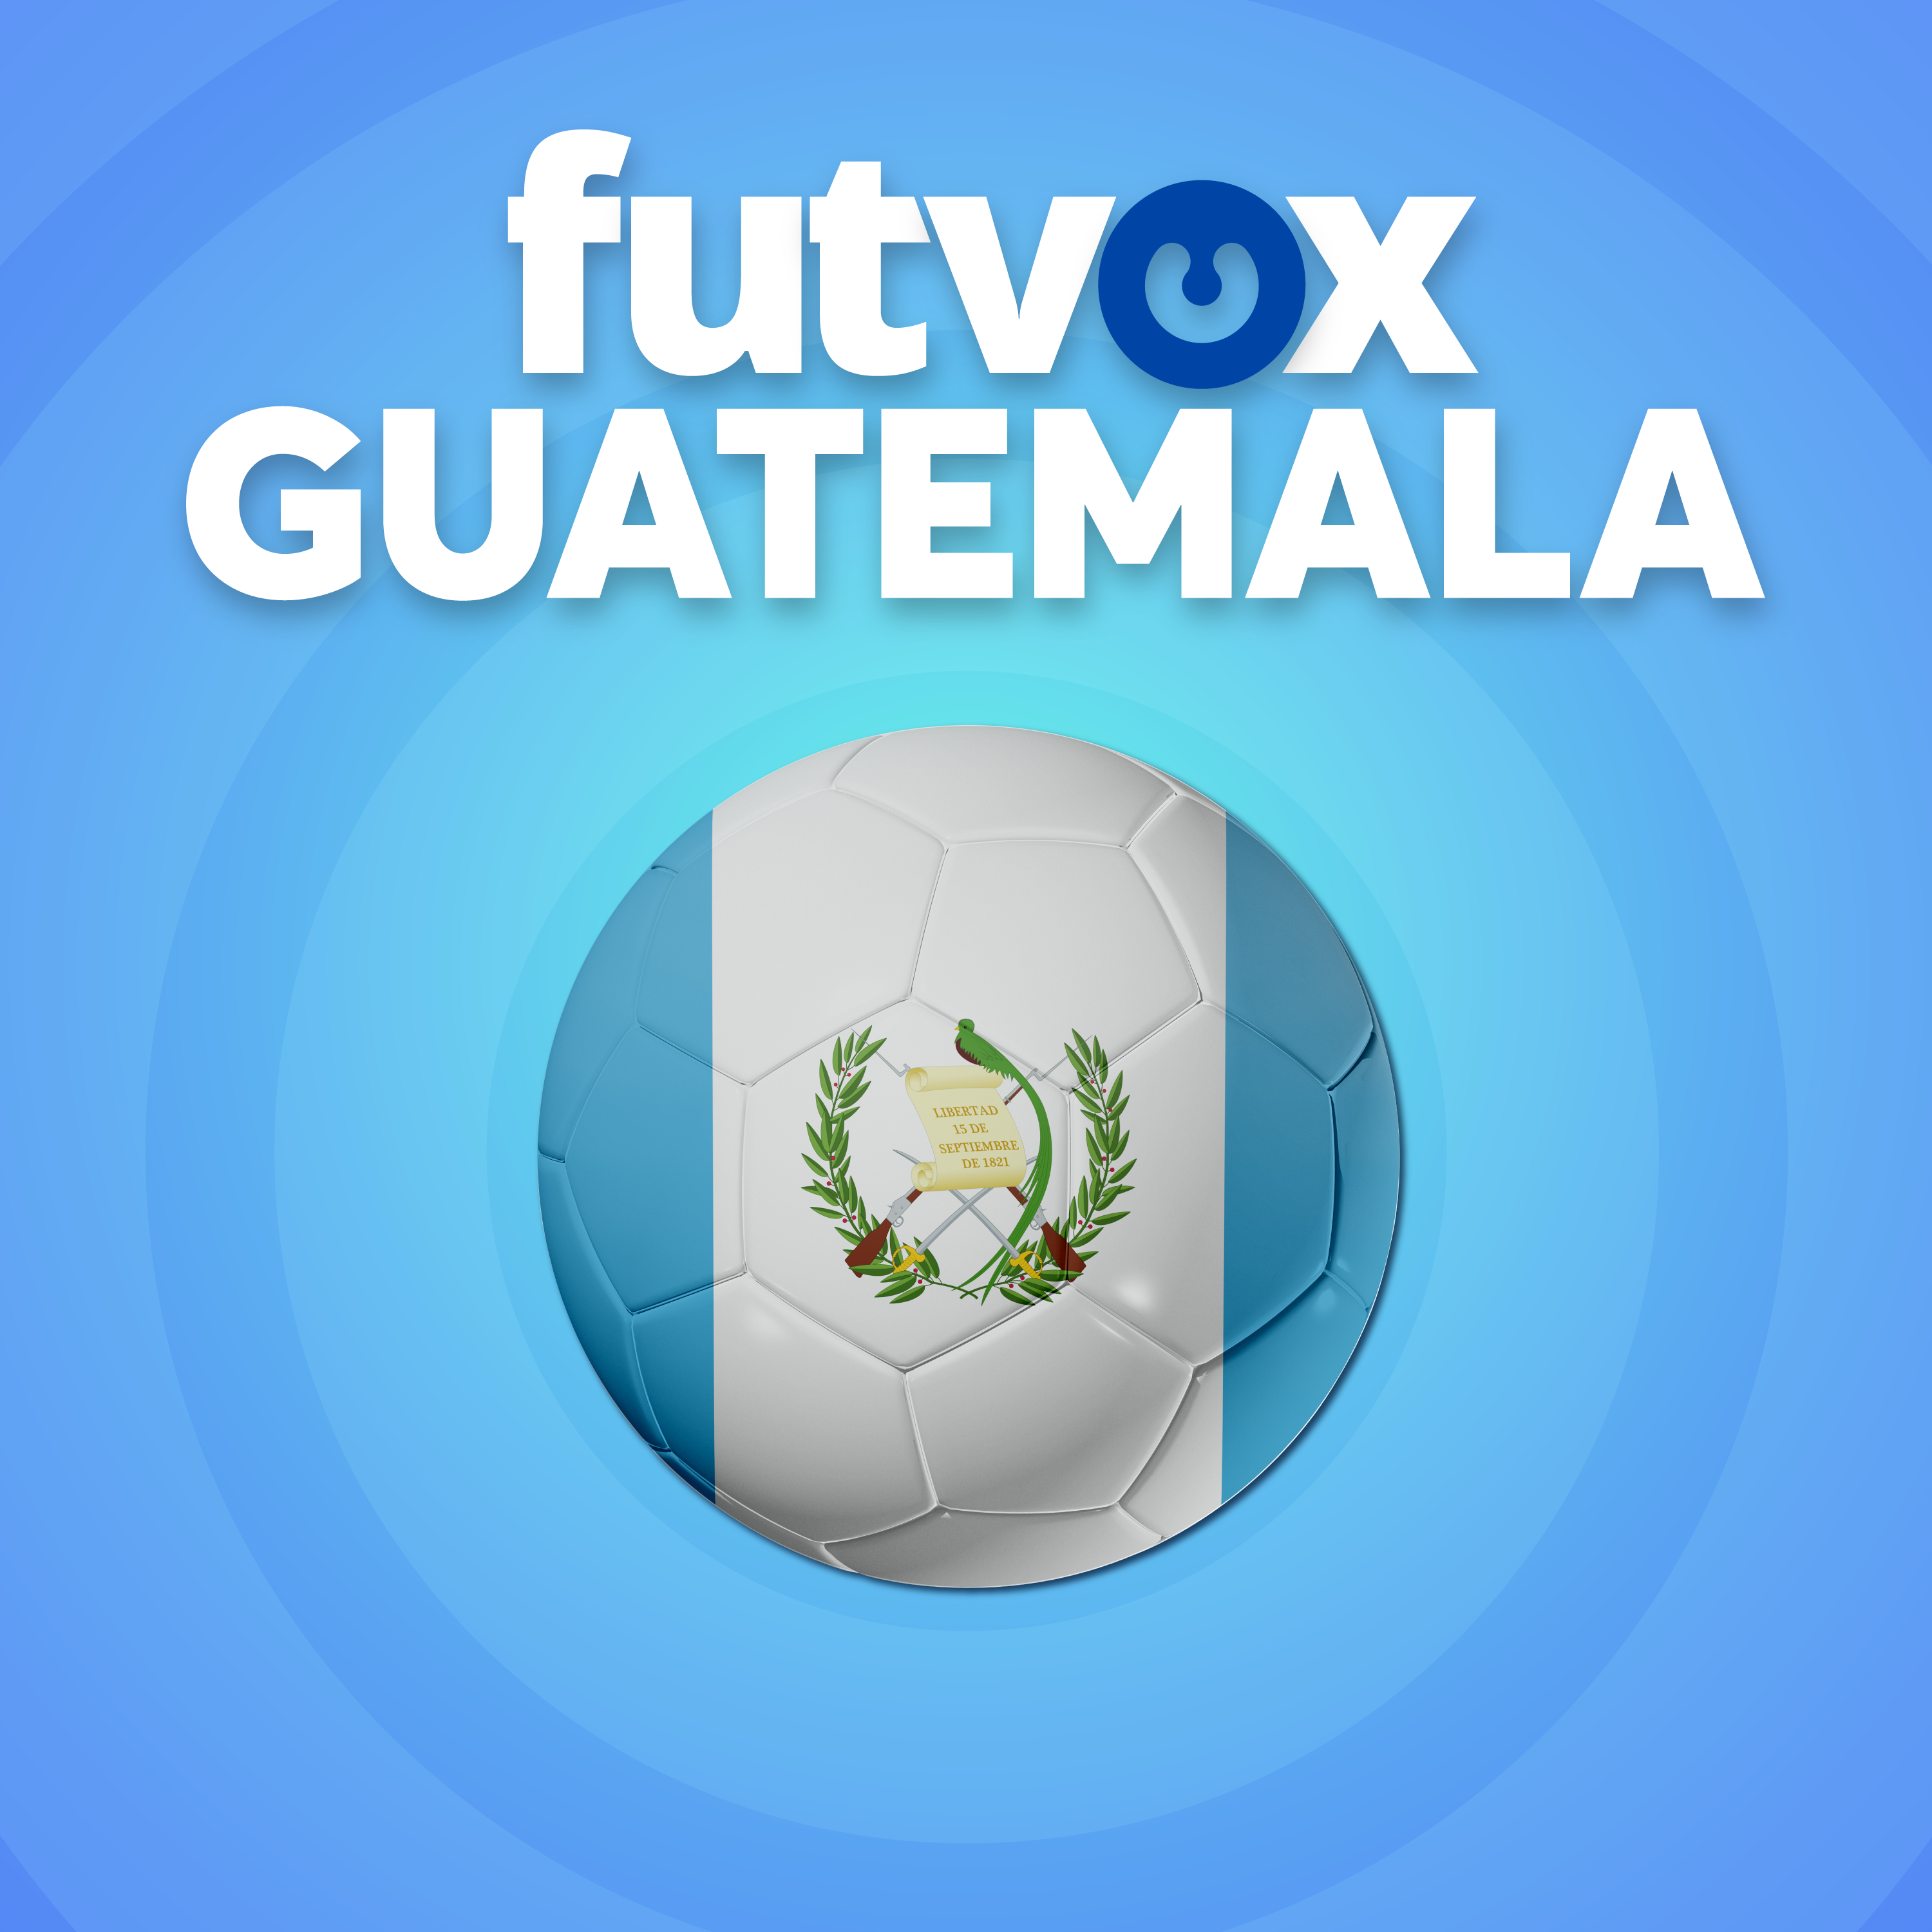 5. Guatemala local en Copa Oro. A un paso de la Clasificación frente a Guadalupe y qué pasa en San Salvador